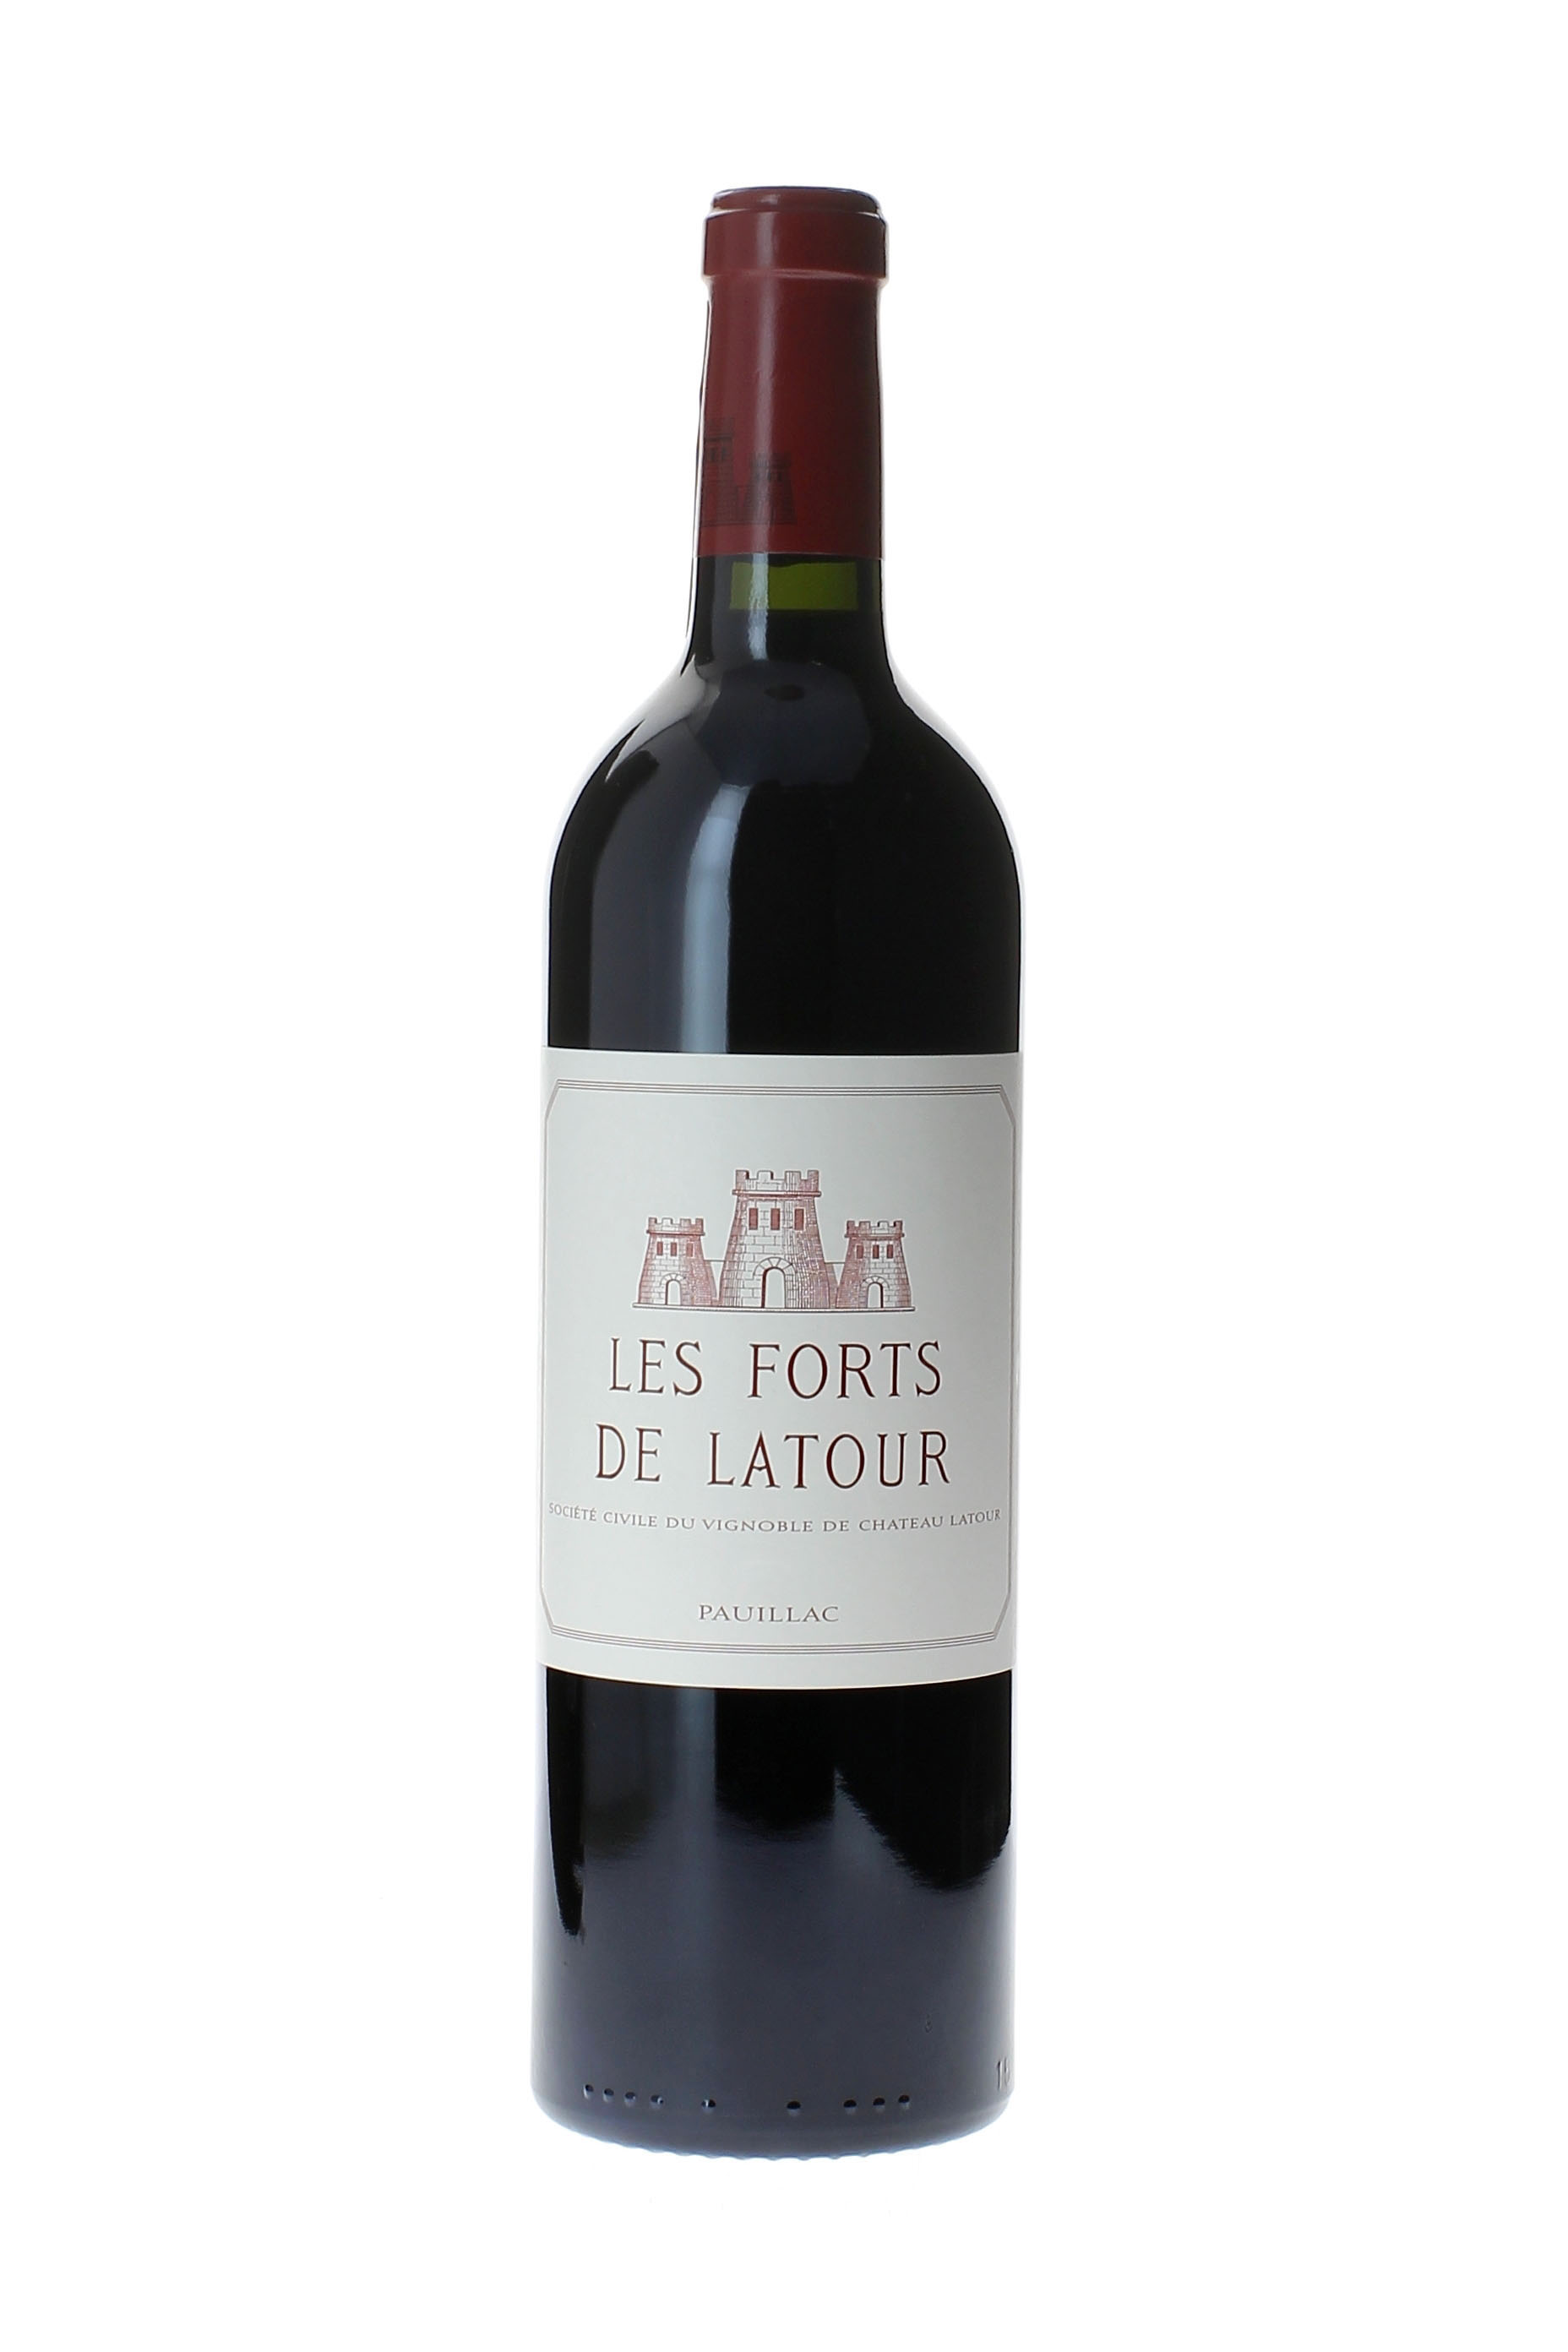 Forts de latour 1996 (2ème vin de LATOUR Pauillac, vin rouge), à